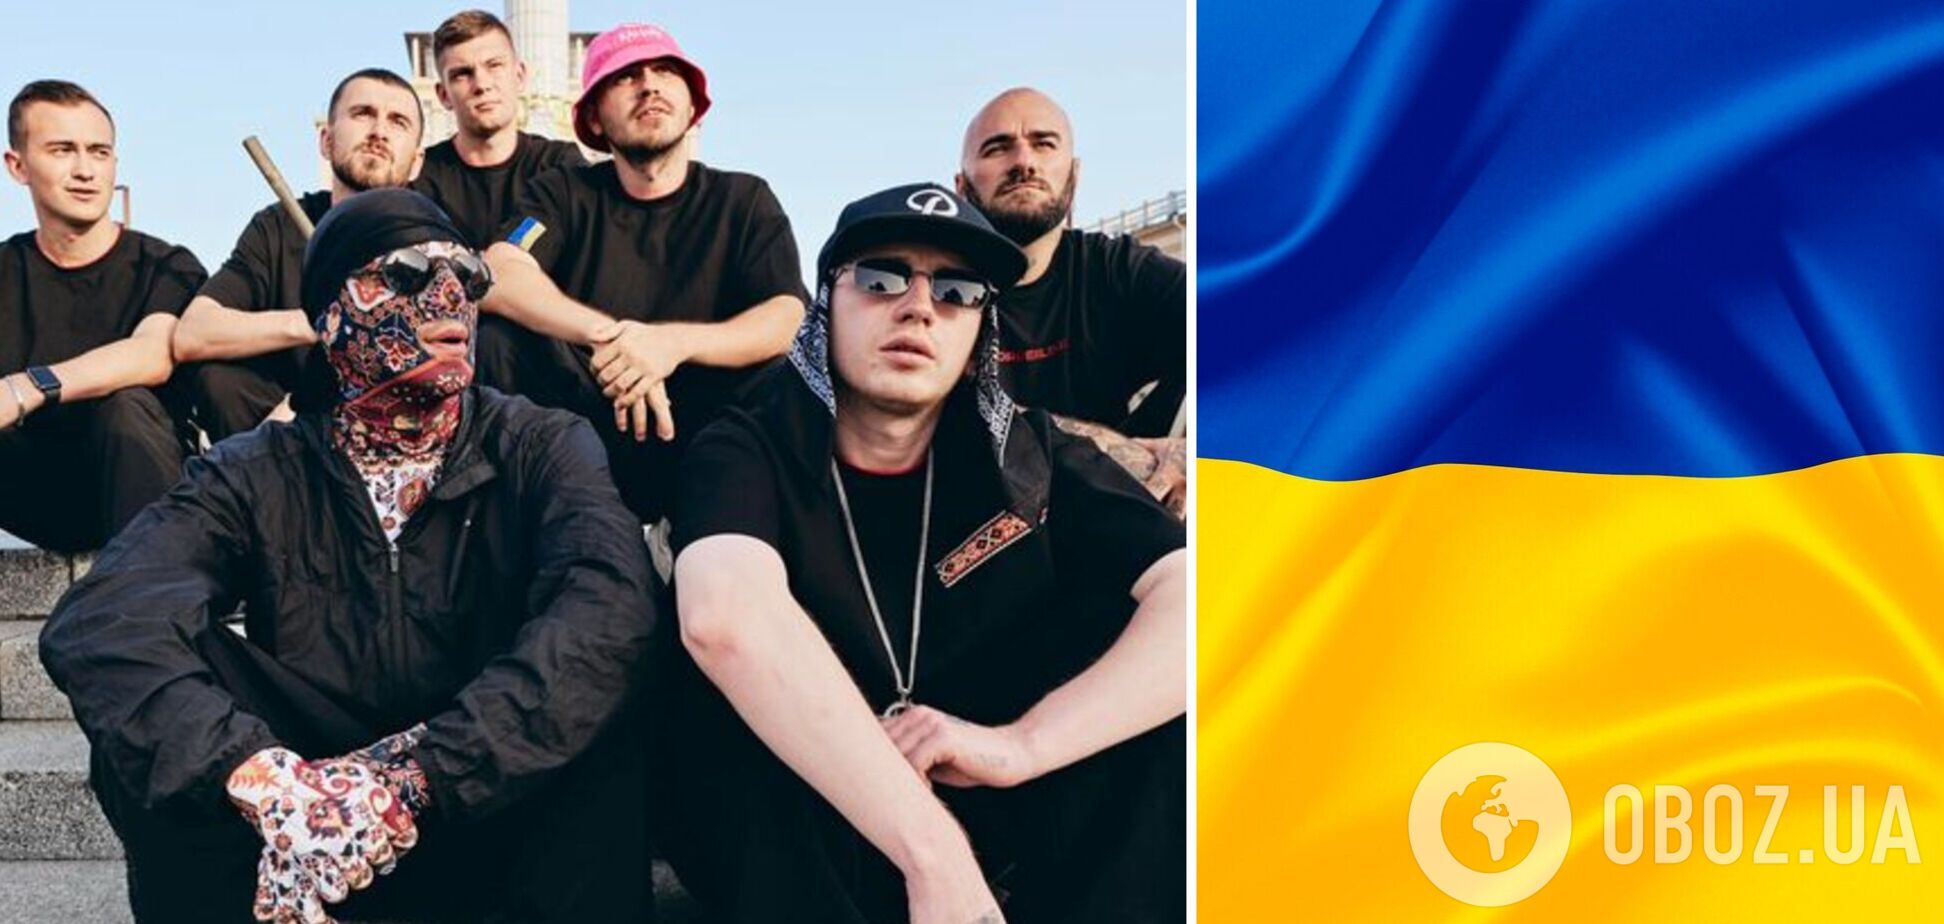 Українці за добу зібрали 5 млн грн на реабілітацію захисників Маріуполя: збір оголосив Kalush Orchestra